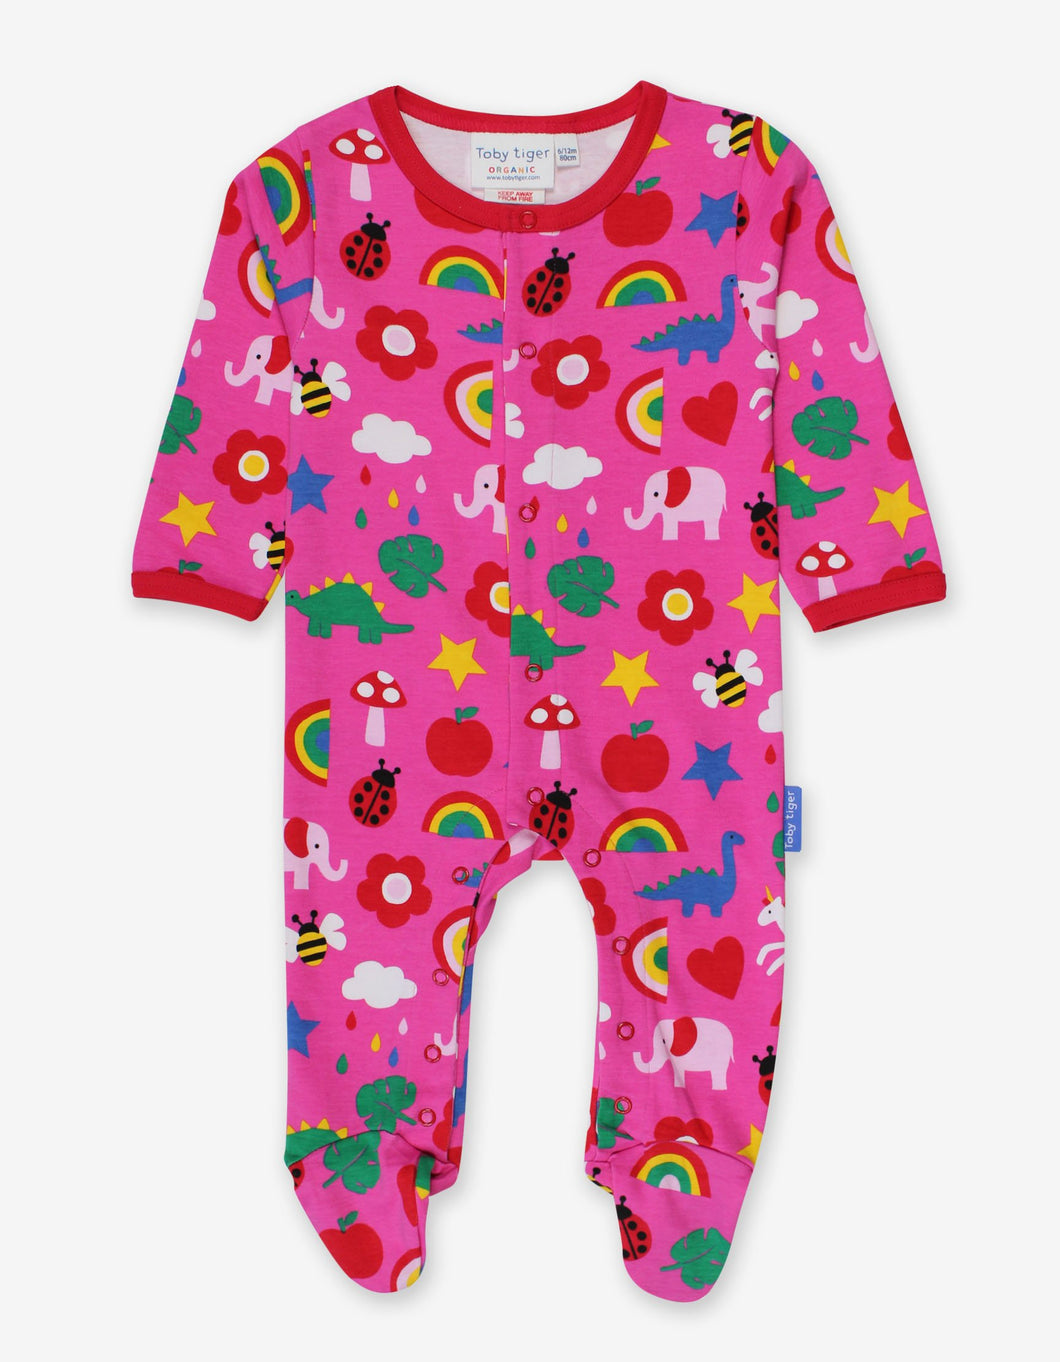 Baby Strampler Schlafanzug aus Bio Baumwolle mit geschlossenen Füßen, farbenfrohem Print